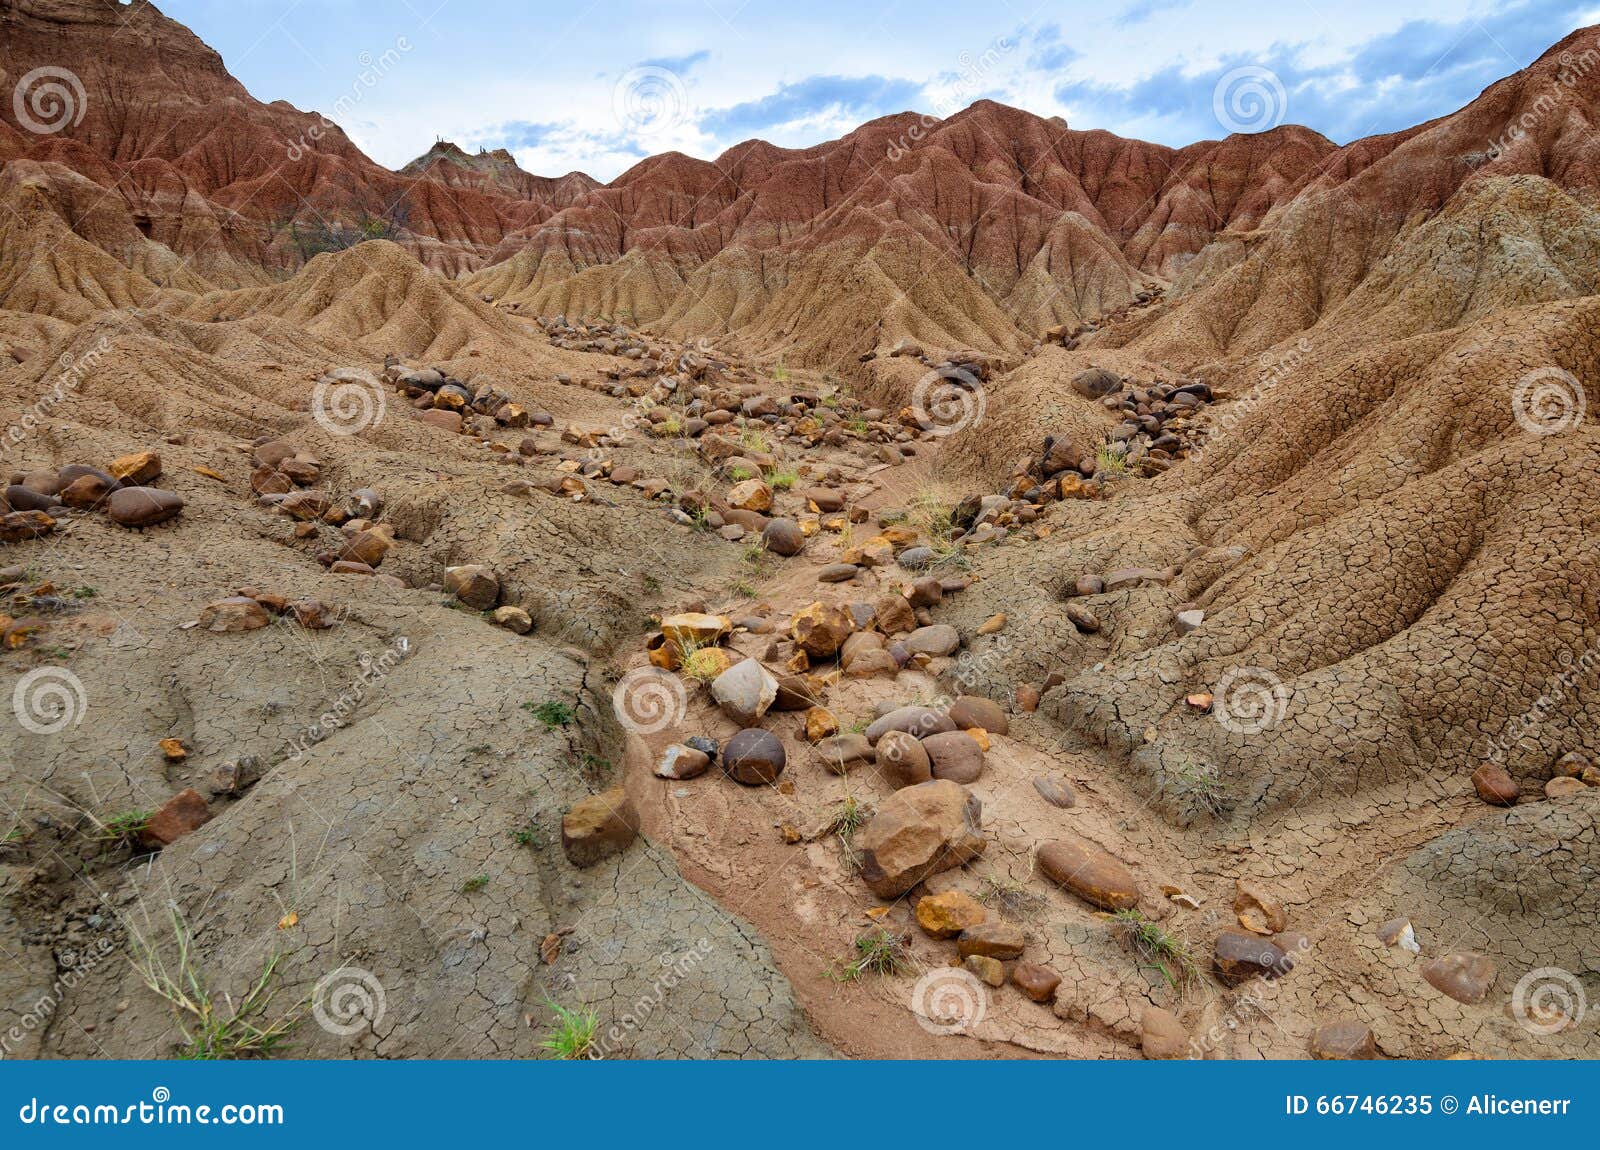 stones in sand formations of tatacoa desert